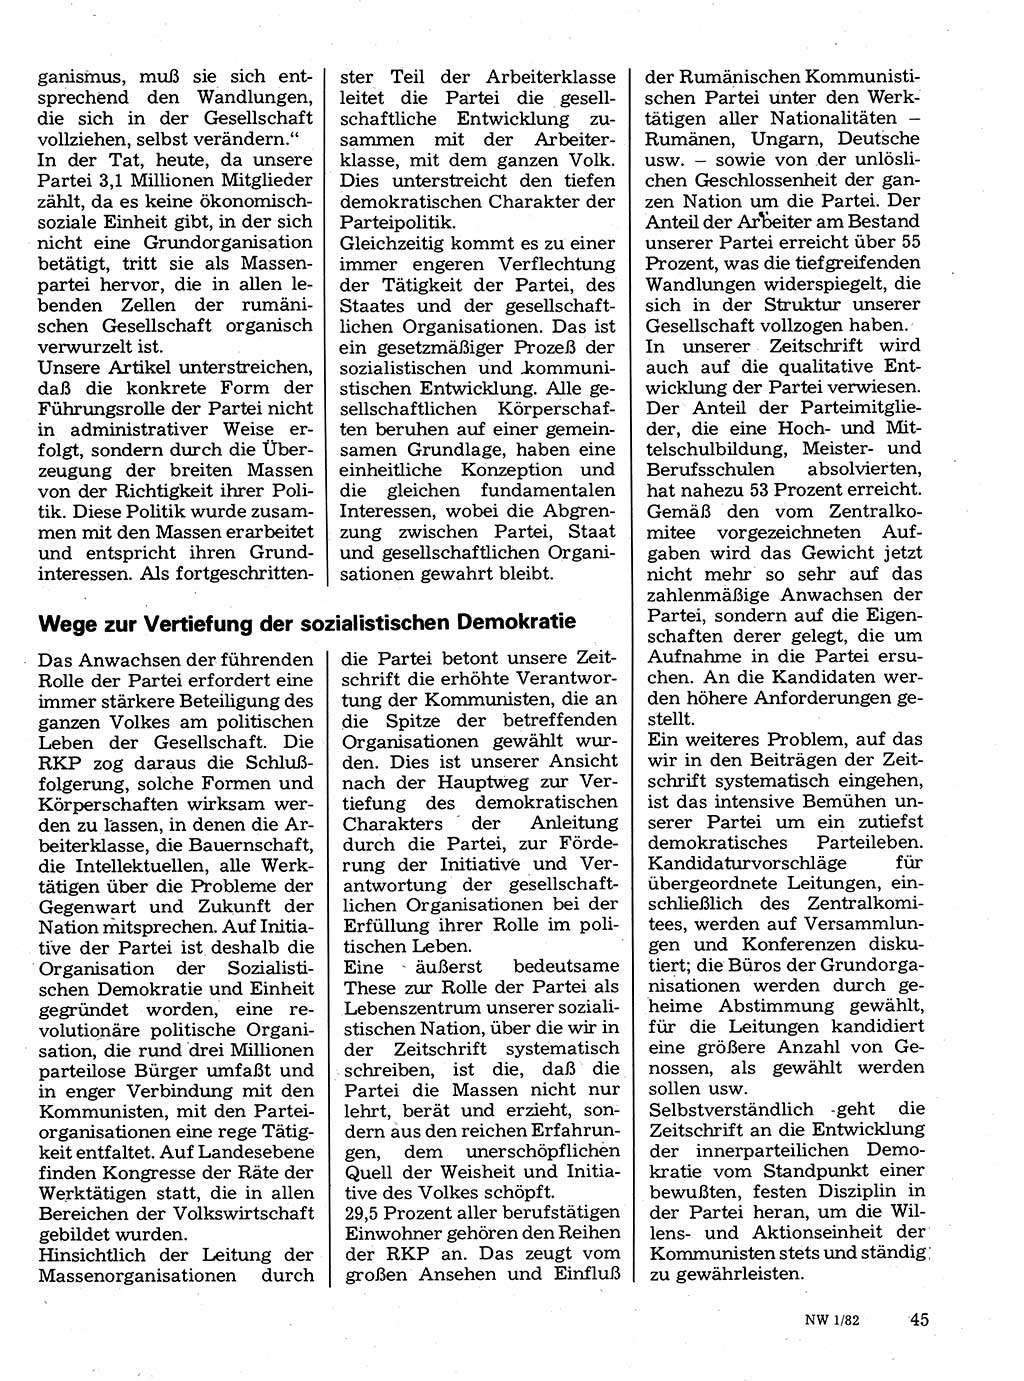 Neuer Weg (NW), Organ des Zentralkomitees (ZK) der SED (Sozialistische Einheitspartei Deutschlands) für Fragen des Parteilebens, 37. Jahrgang [Deutsche Demokratische Republik (DDR)] 1982, Seite 45 (NW ZK SED DDR 1982, S. 45)